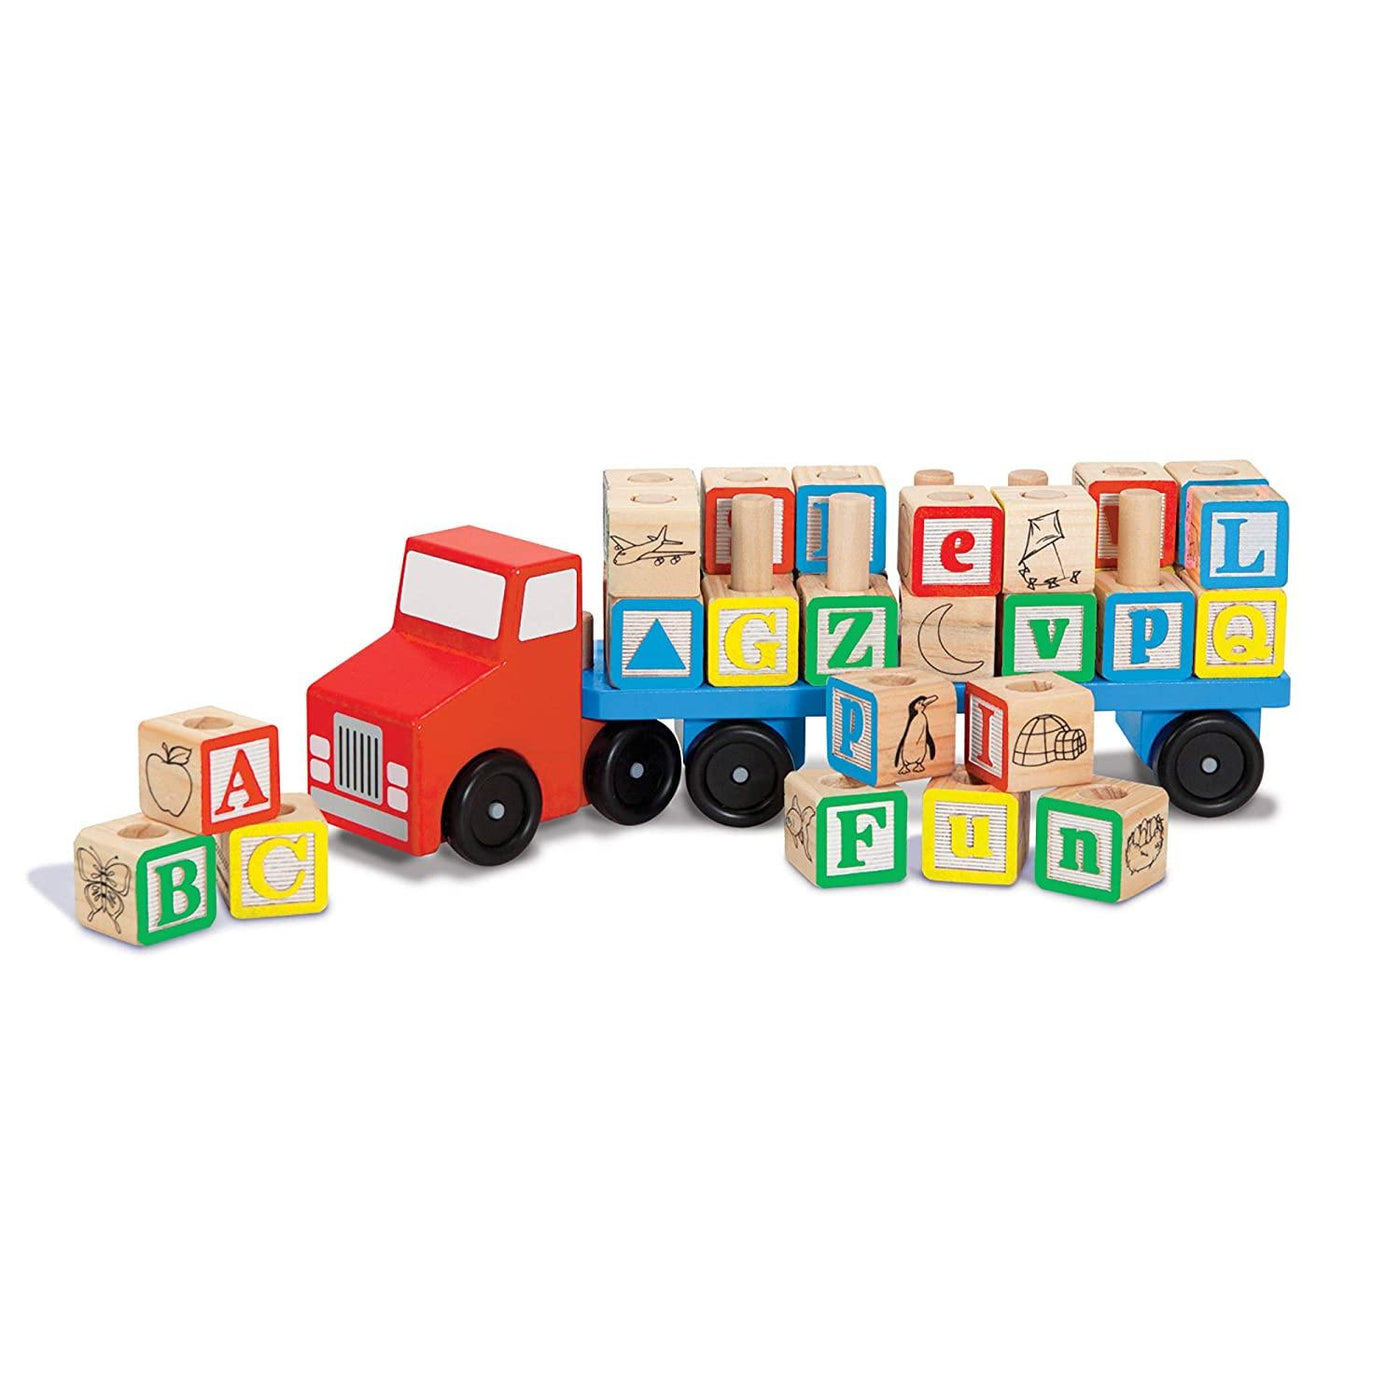 Alphabet Truck - Krazy Caterpillar 